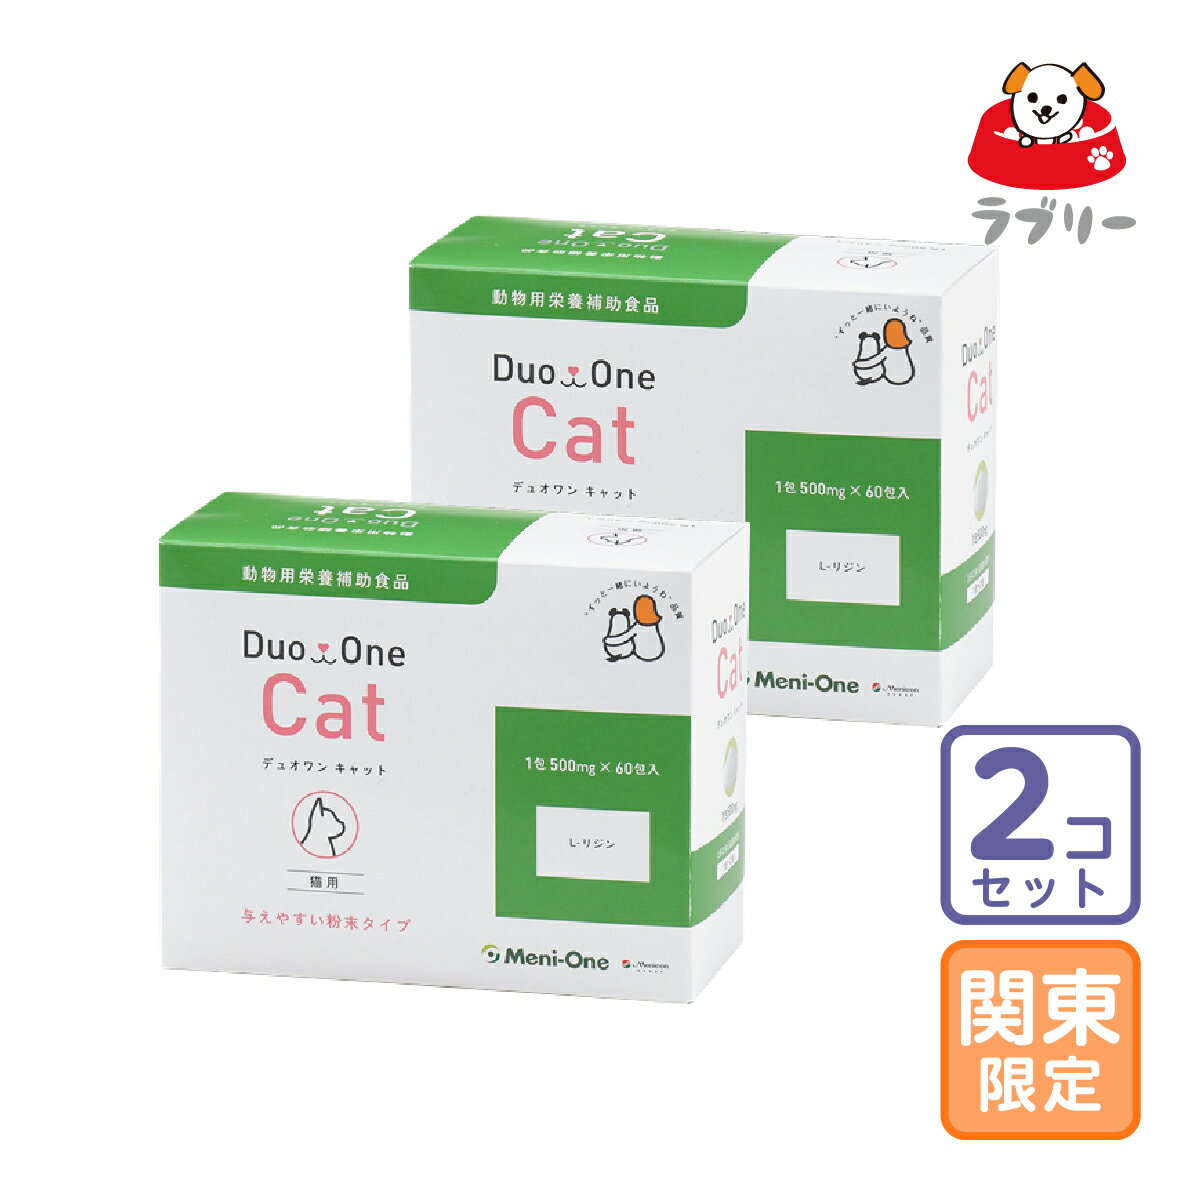 Duo One Cat（デュオワン キャット）猫用 60包 「メニにゃんEye」のパッケージと名称を「Duo One Cat」にリニューアル！（容量、成分は「メニにゃんEye」と一切変更ございません）猫ちゃんの瞳のためのL-リジン塩酸塩のサプリメントです。与えやすい粉末タイプになっています。症状に応じて1日1包〜2包、ウェットフードとよく混ぜて与えてください。 成分 蛋白質：0.5g脂質：0g炭水化物：0gナトリウム：0mg熱量2kcal 使用上の注意 ※L-リジンは、単独で与えると嘔吐しやすいのでウエットフード等によく混ぜて与えます。 ※ 涙の量が多い、白めの部分が腫れている等の症状が見られたときには、かかりつけの獣医師にご相談ください。※こちらの商品は1個3100円税込！お届け先関東・関西・中部限定、送料無料2個セットとなります。ご了承ください。